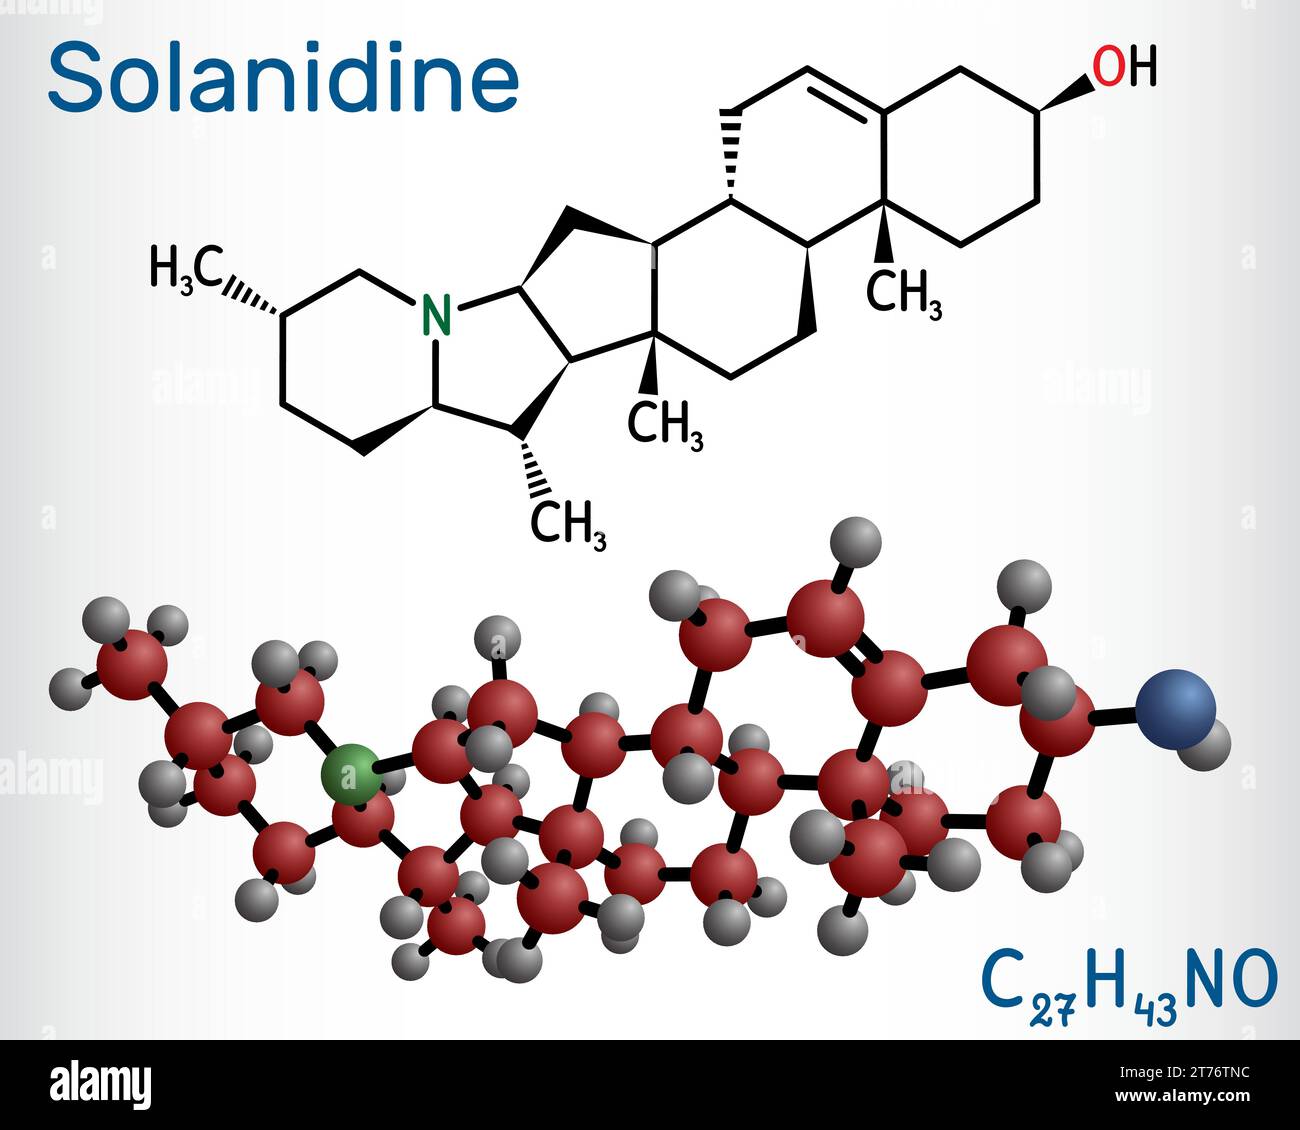 Solanidin-Molekül. Es ist giftiges steroidales Alkaloid, pflanzlicher Metabolit, Toxin. Strukturelle chemische Formel und Molekülmodell. Vektorabbildung Stock Vektor